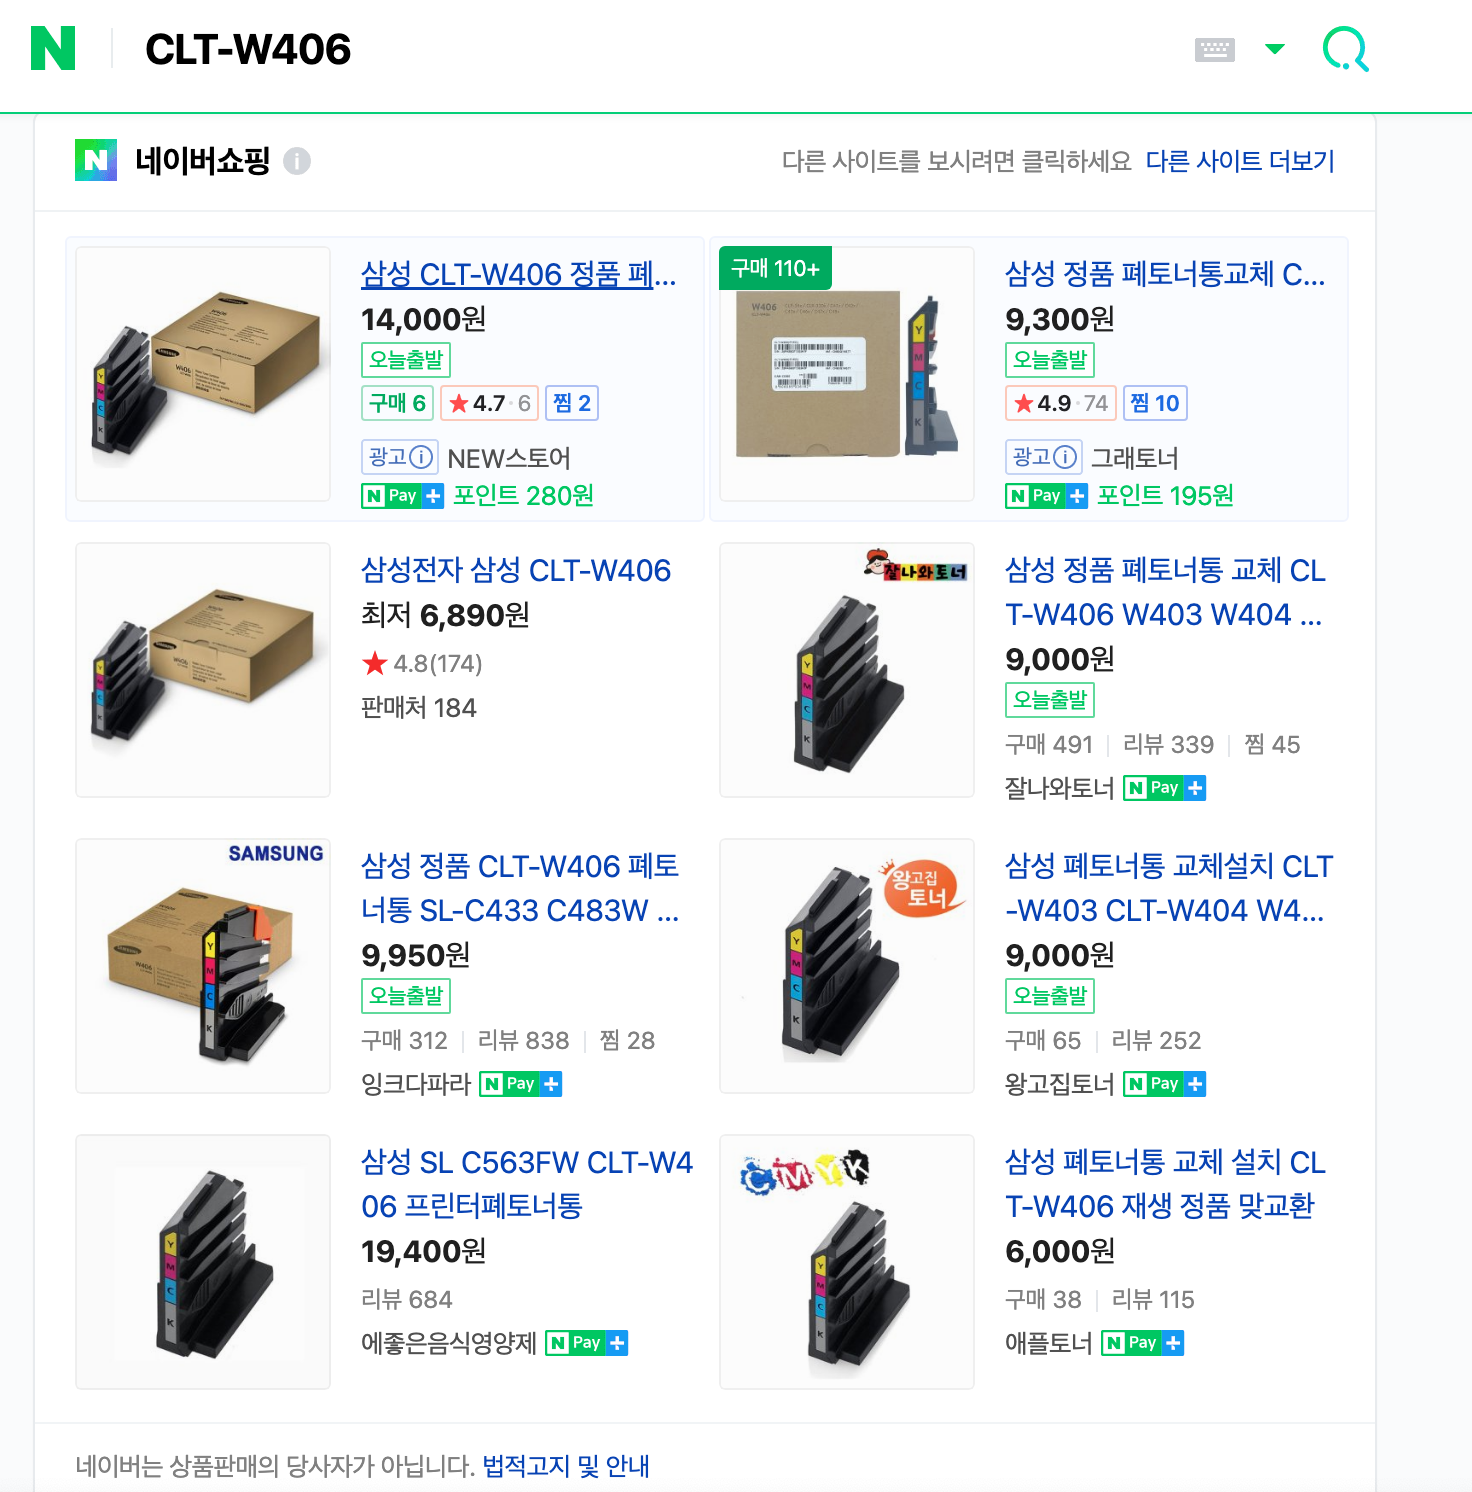 네이버 쇼핑 CLT-W406 검색결과